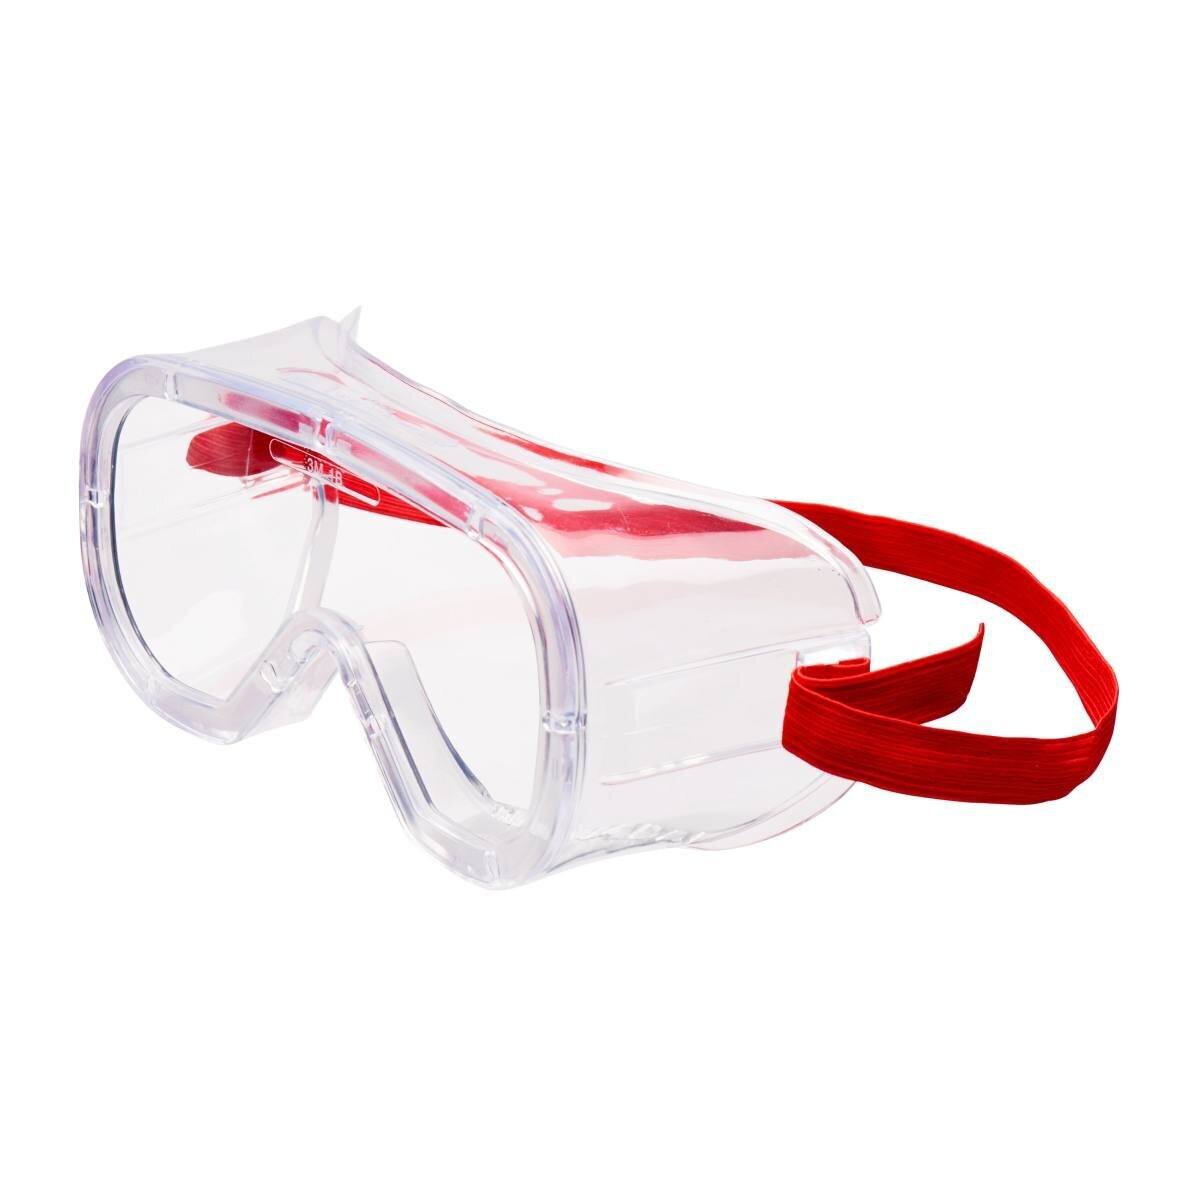 3M Gafas de visión total Budget Bud4800 UV, PC, transparentes, con ventilación indirecta